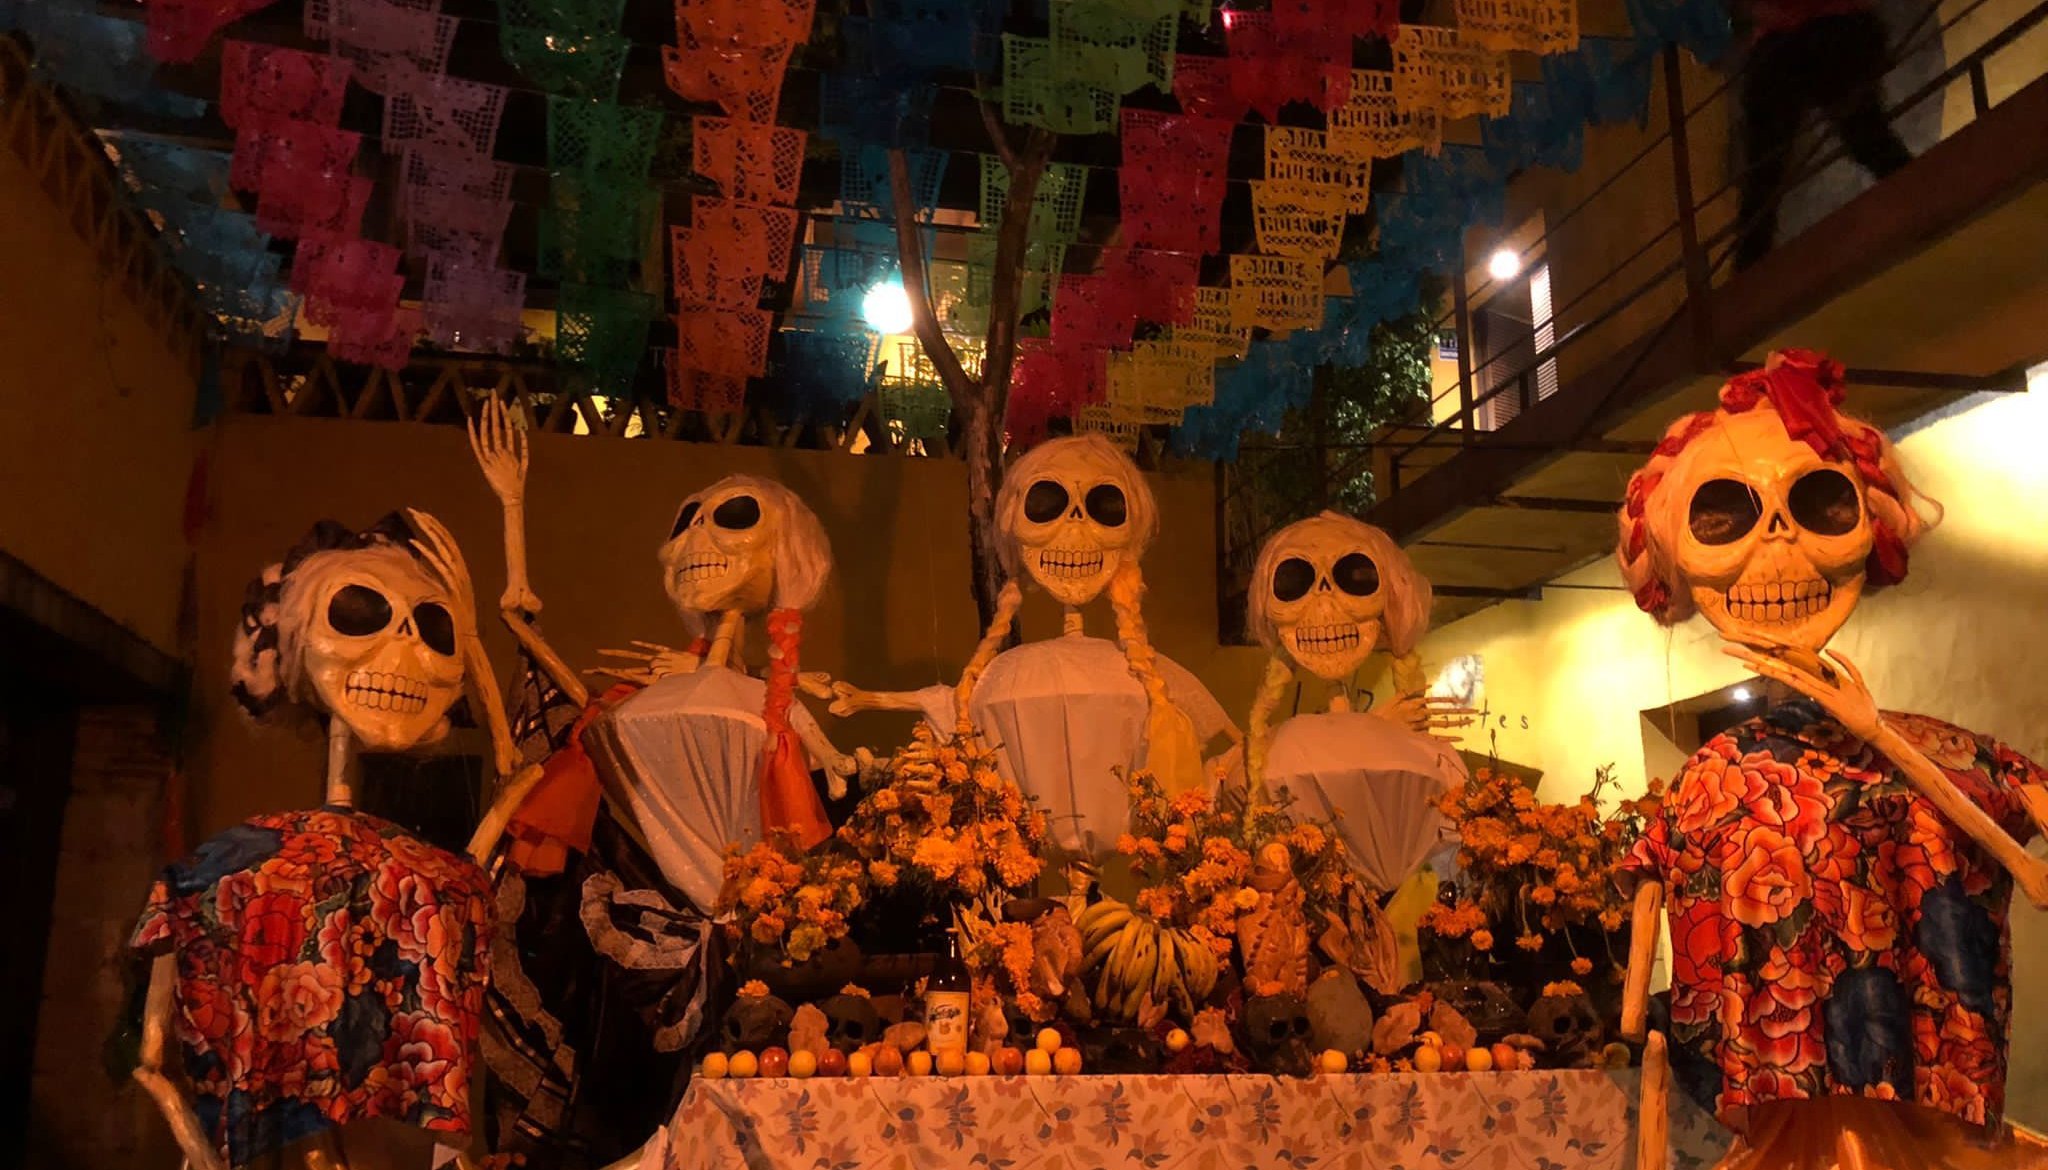 Read Guide to Oaxaca by KAVU